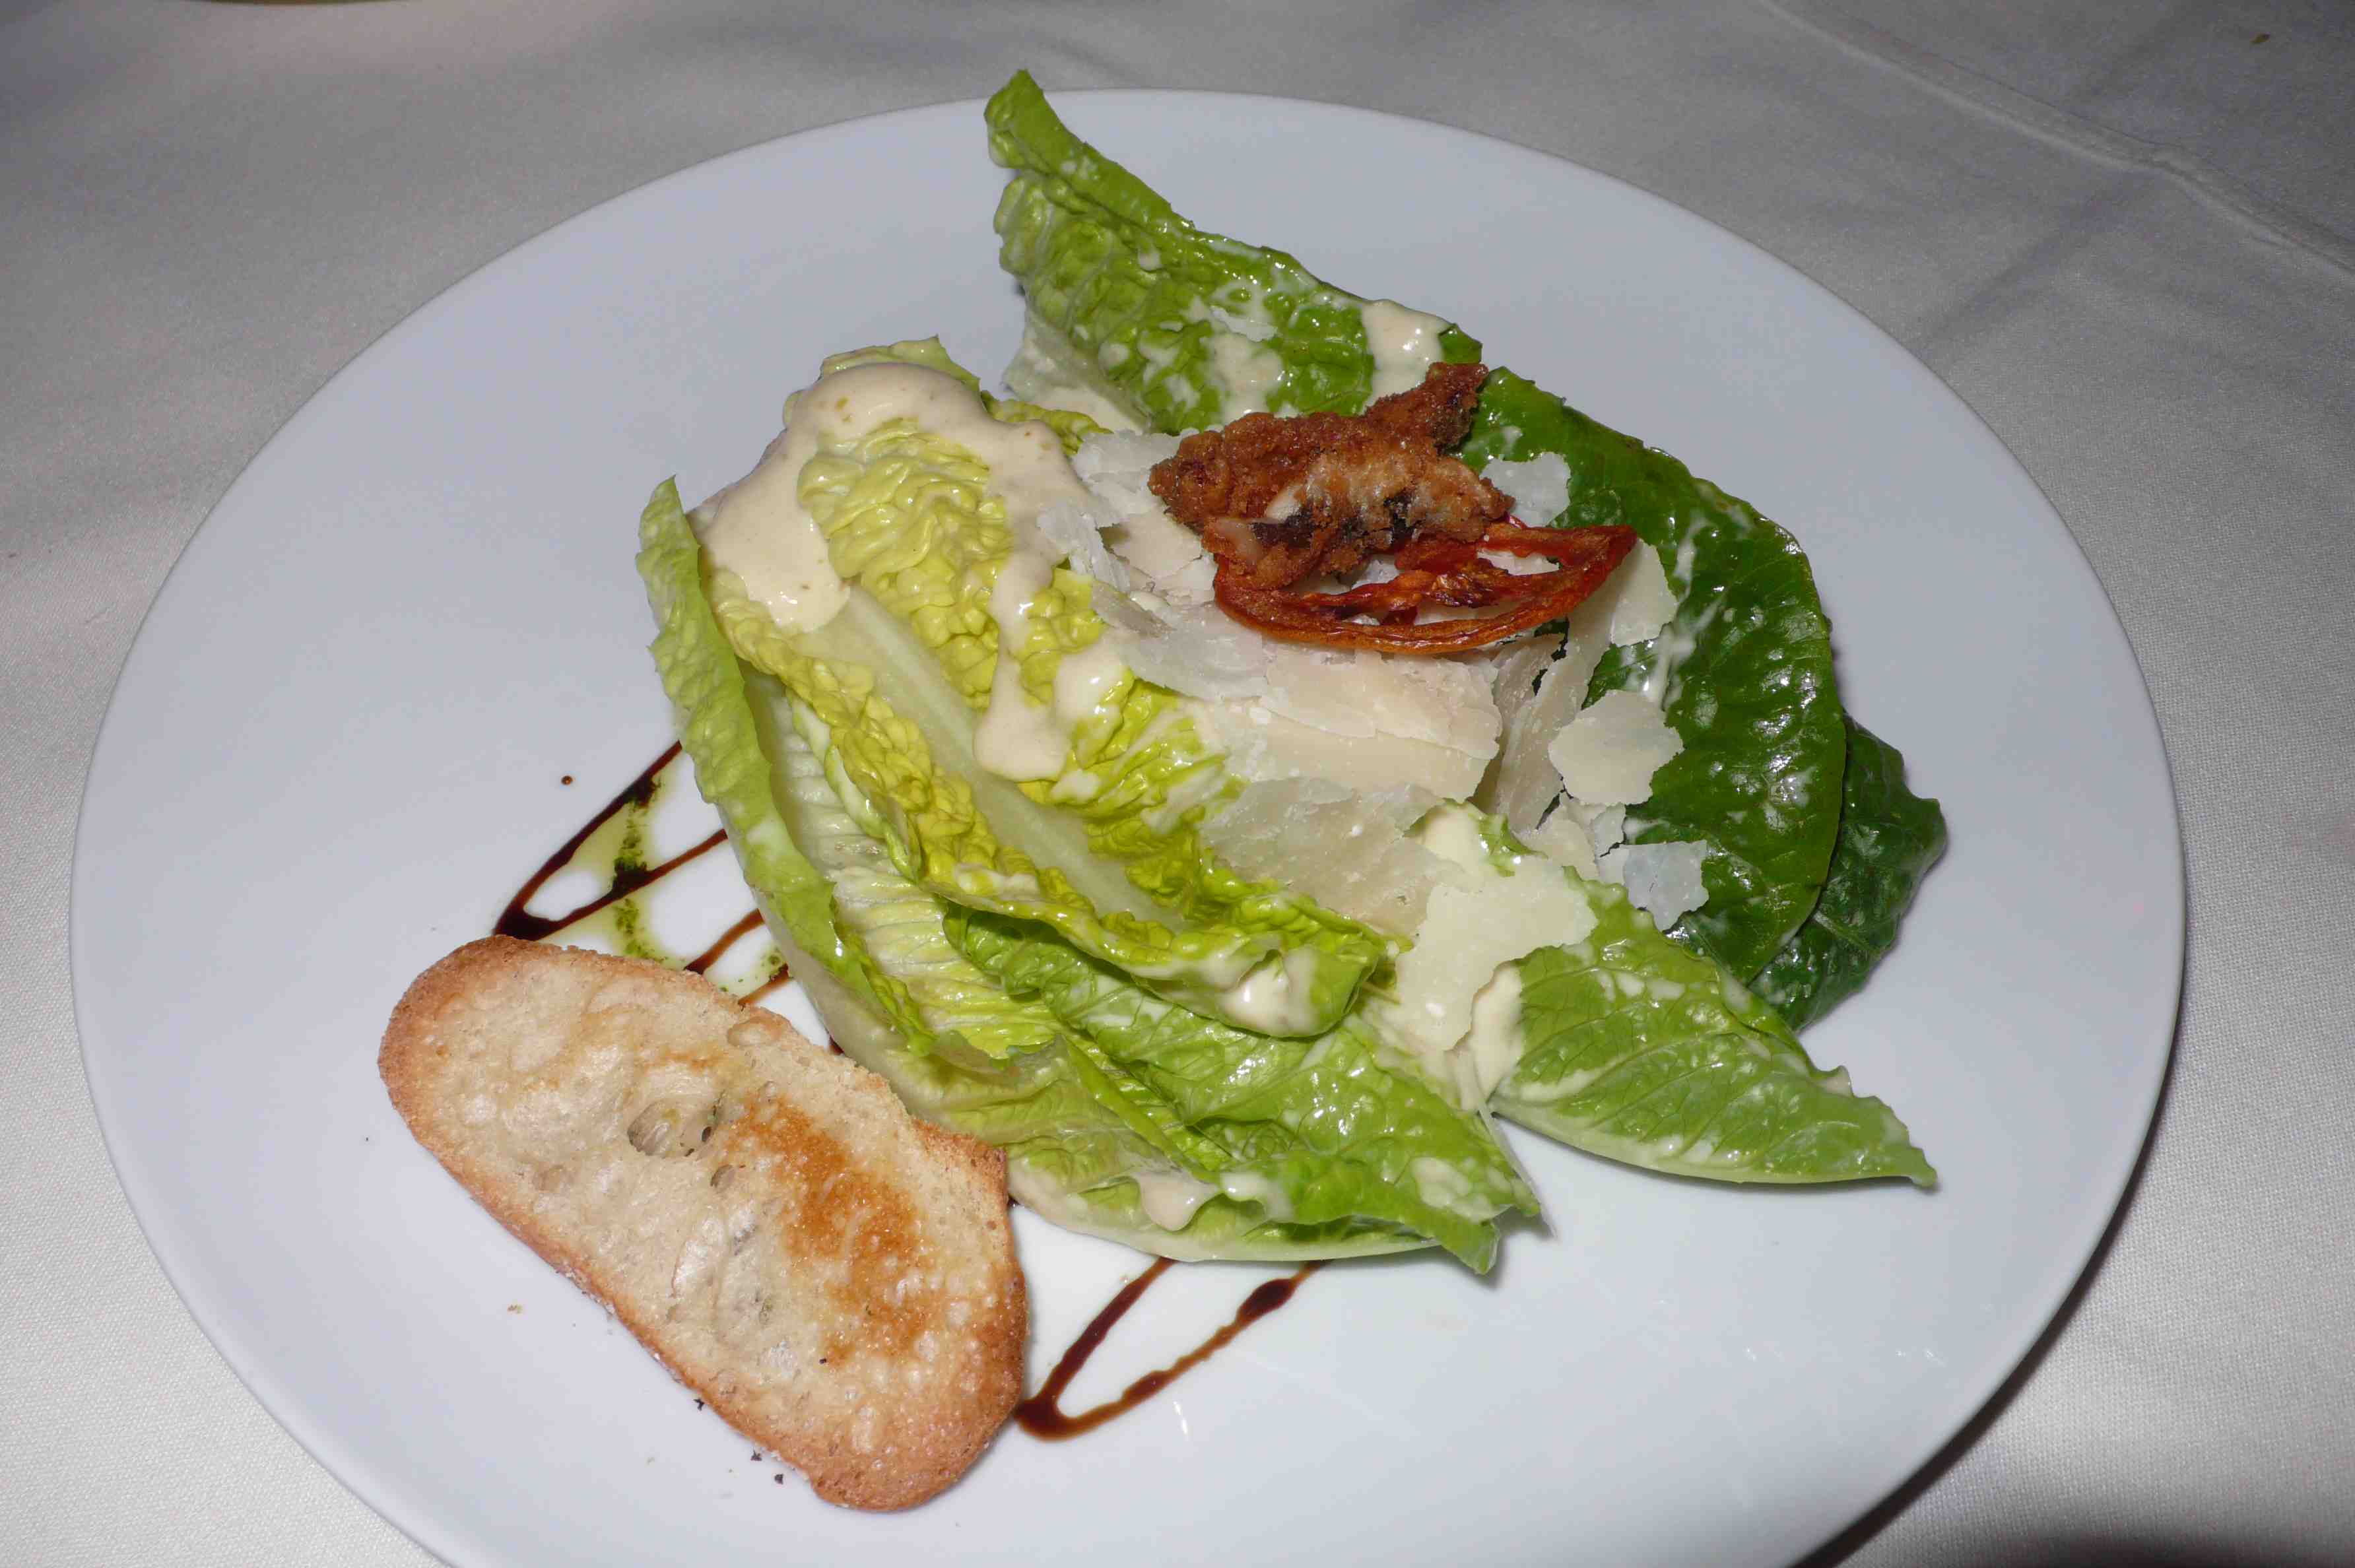 Ceasar Salad